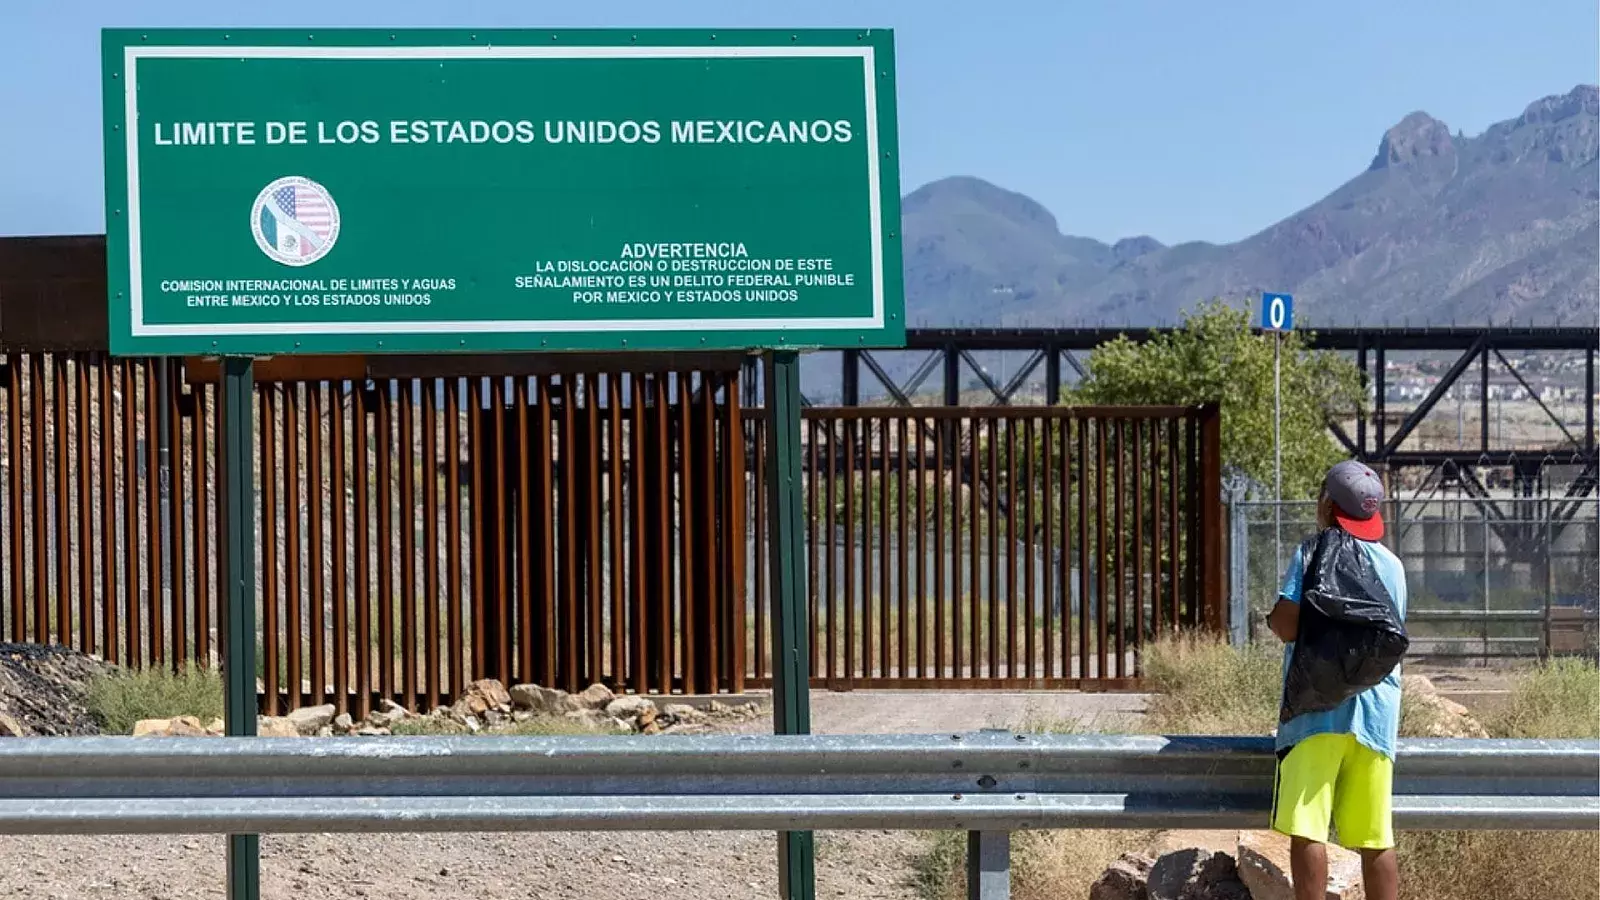 Carteles mexicanos utilizan aplicaciones móviles para facilitar contrabando en la frontera de EE.UU.